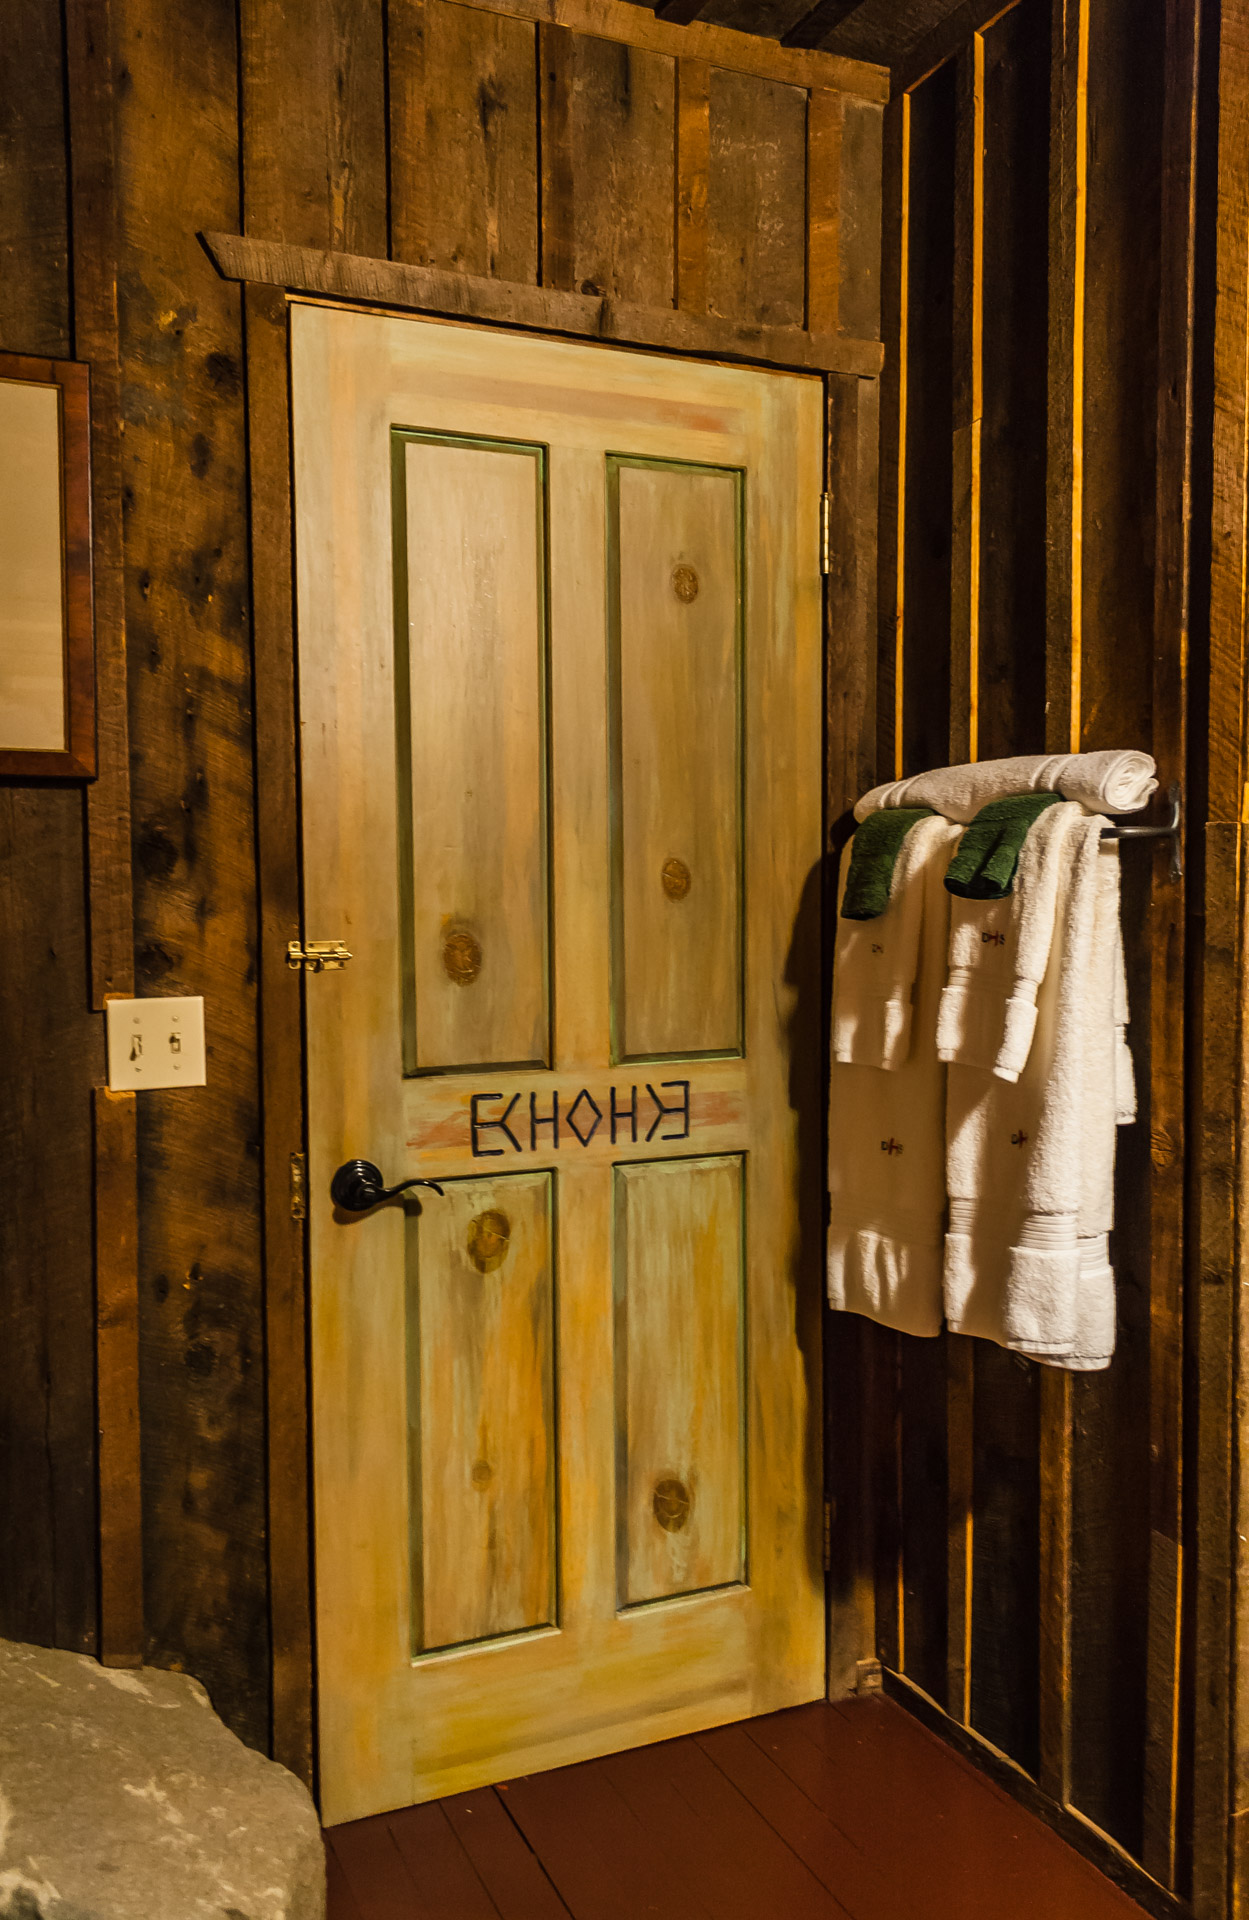 Dunton Hot Springs (echo door)